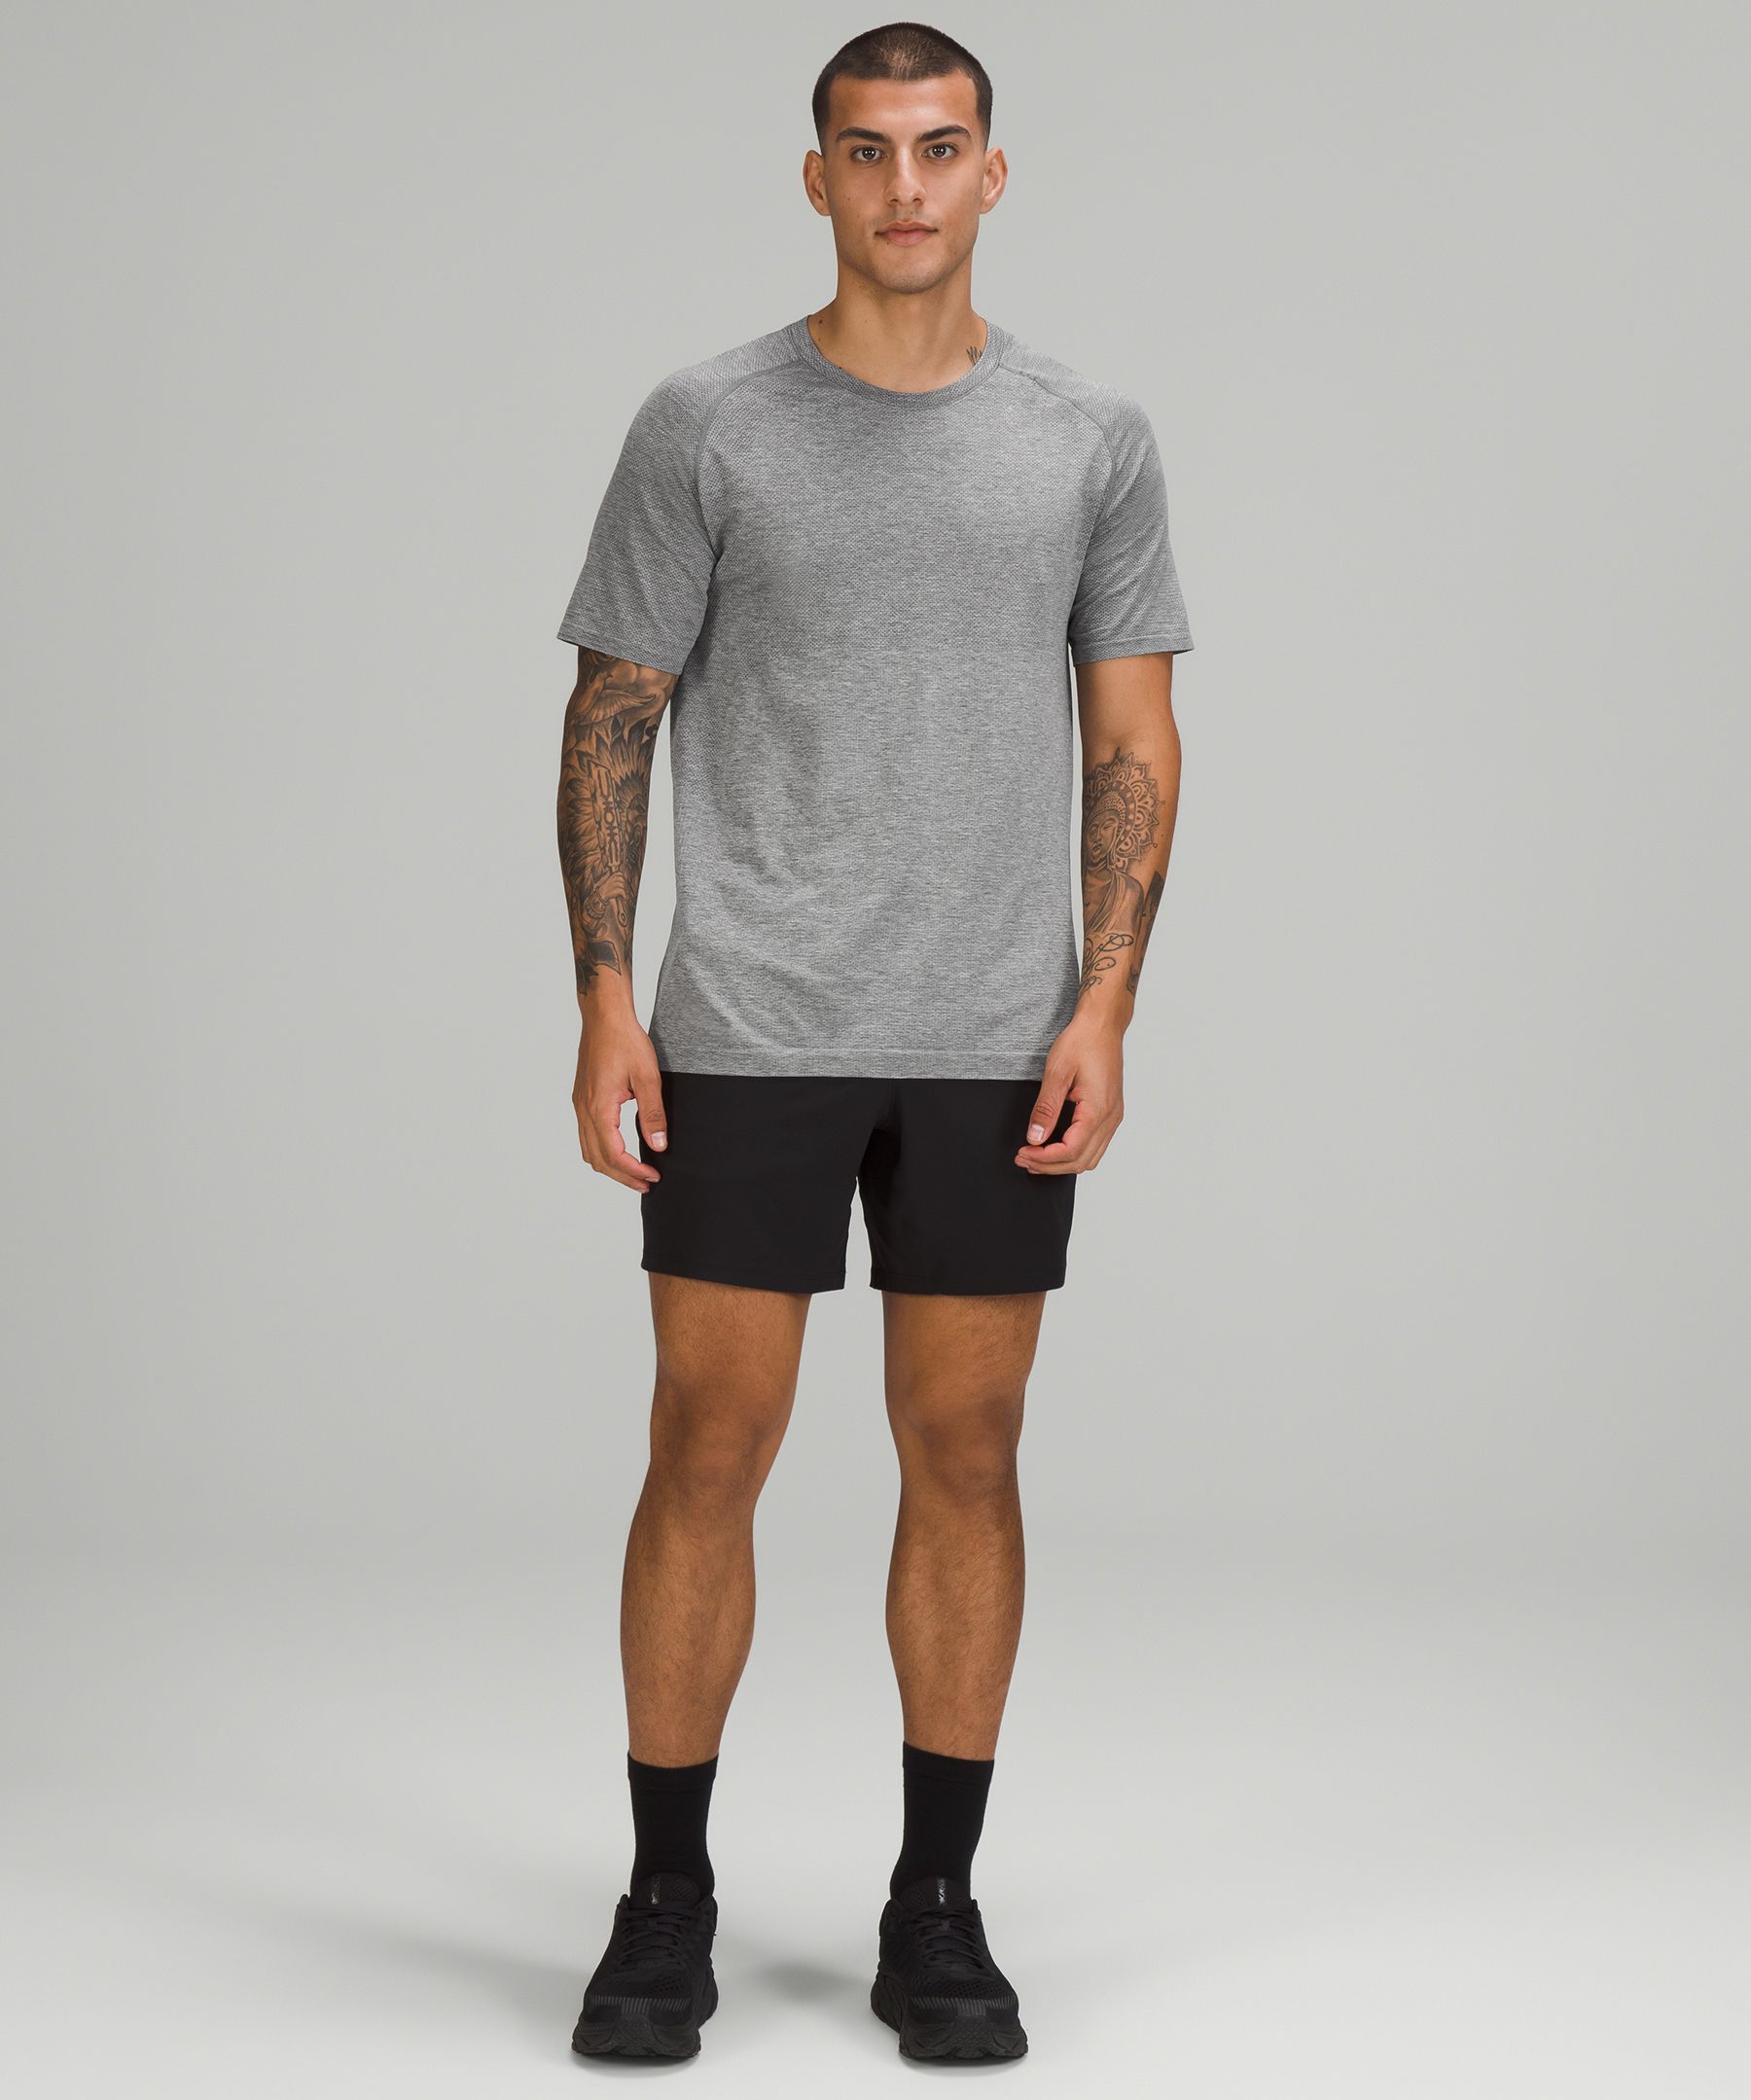 Metal Vent Tech Short Sleeve Shirt 2.0 | Men's Short Sleeve Shirts 